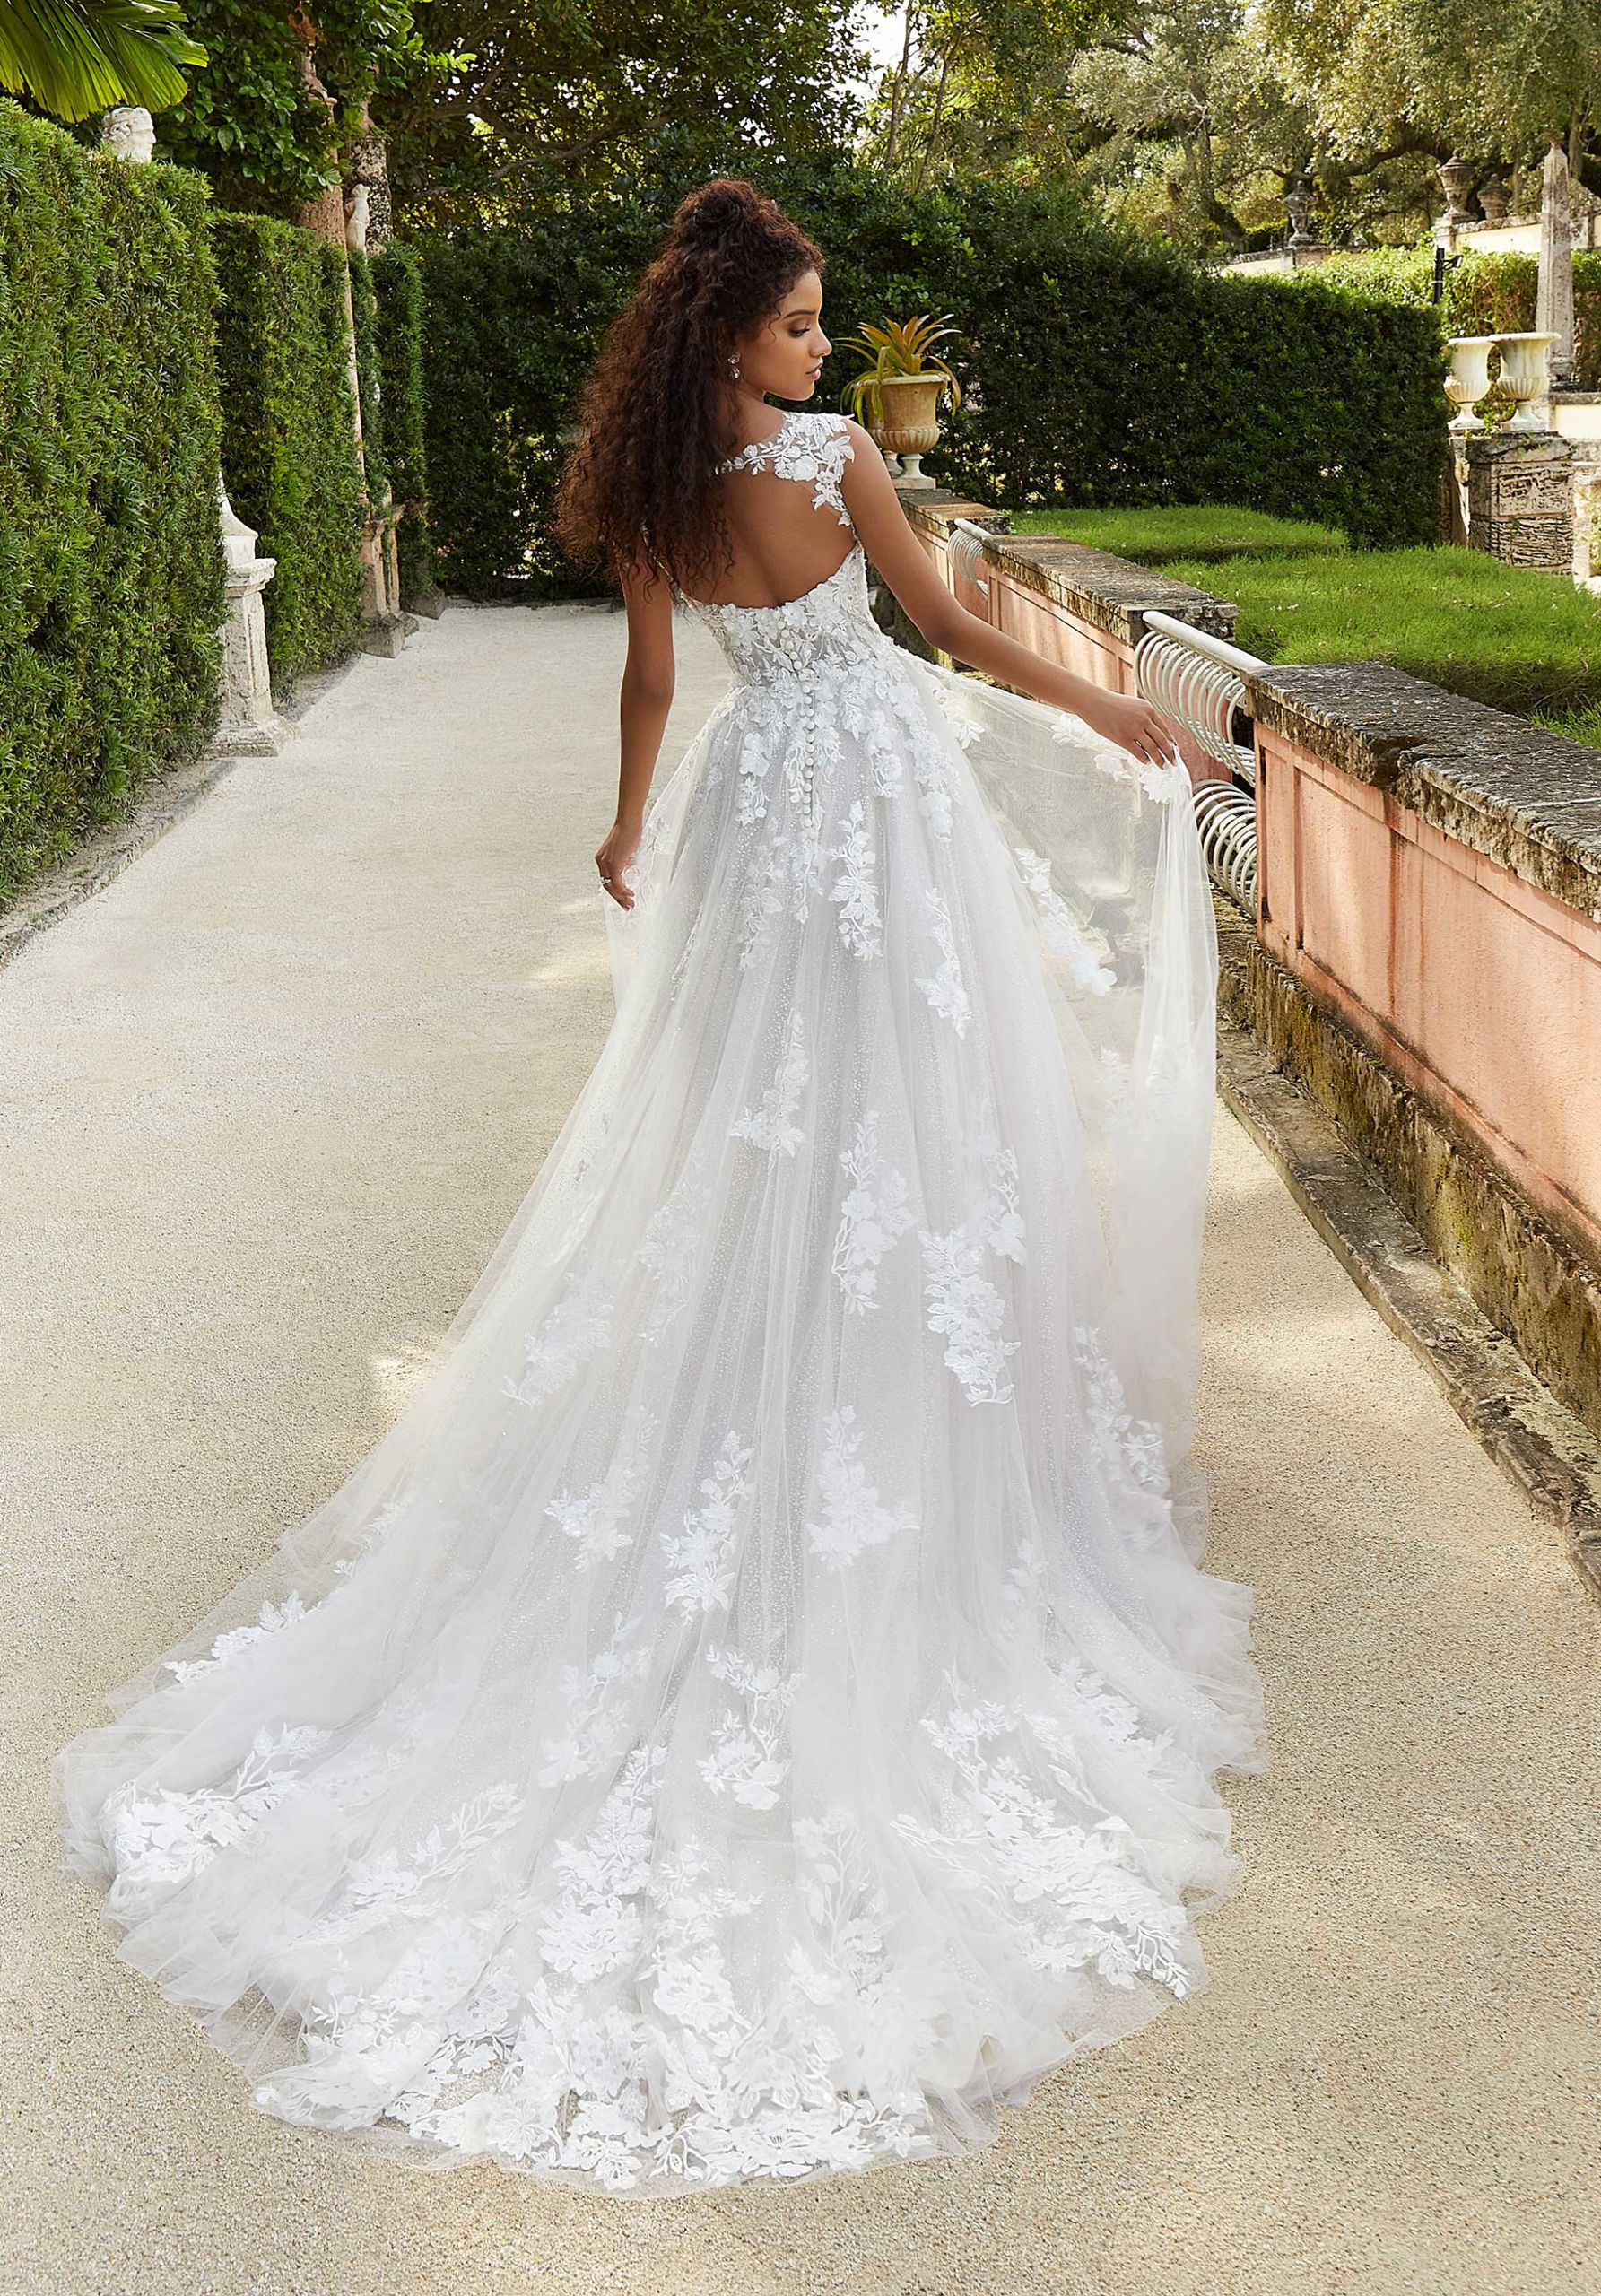 Fiorenza wedding dress by Morilee